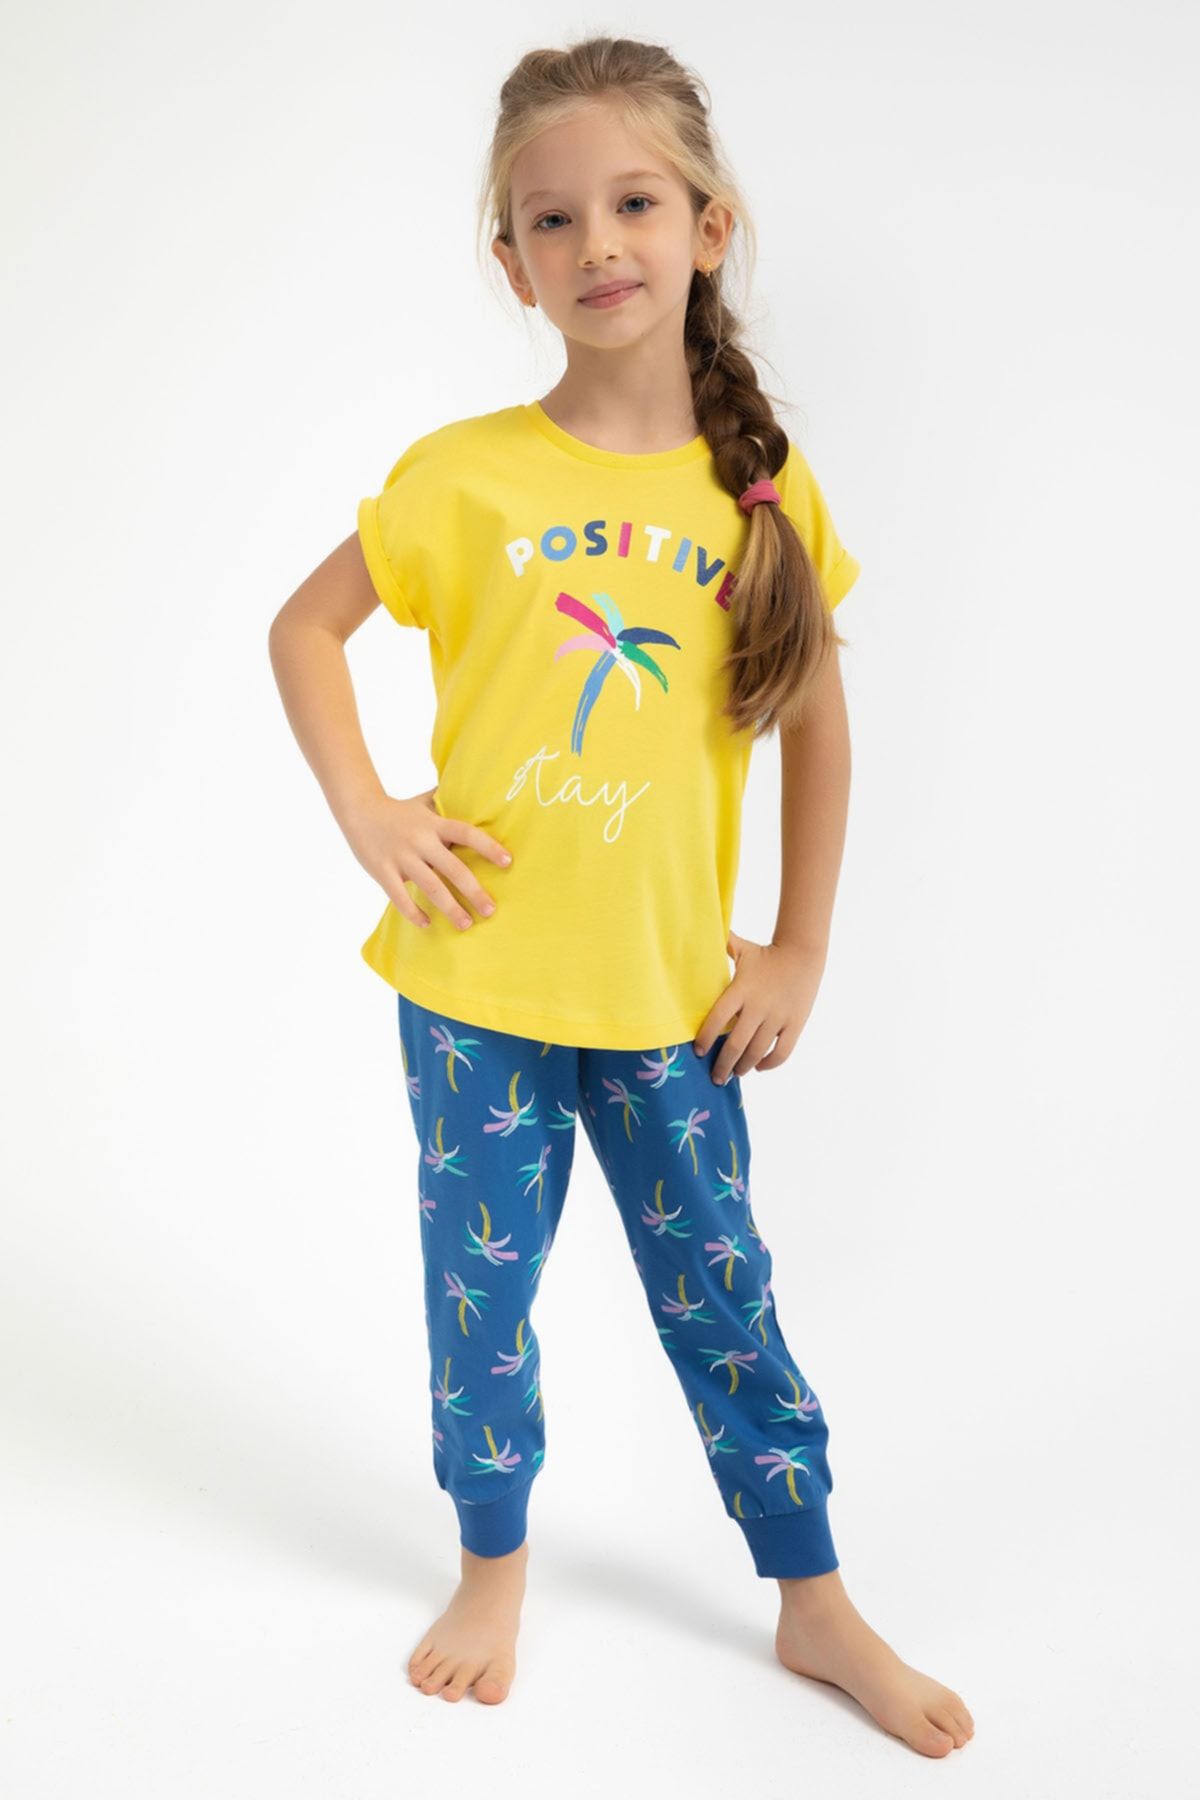 Rolypoly Rolypoly Positive Stay Sarı Kız Çocuk Pijama Takımı